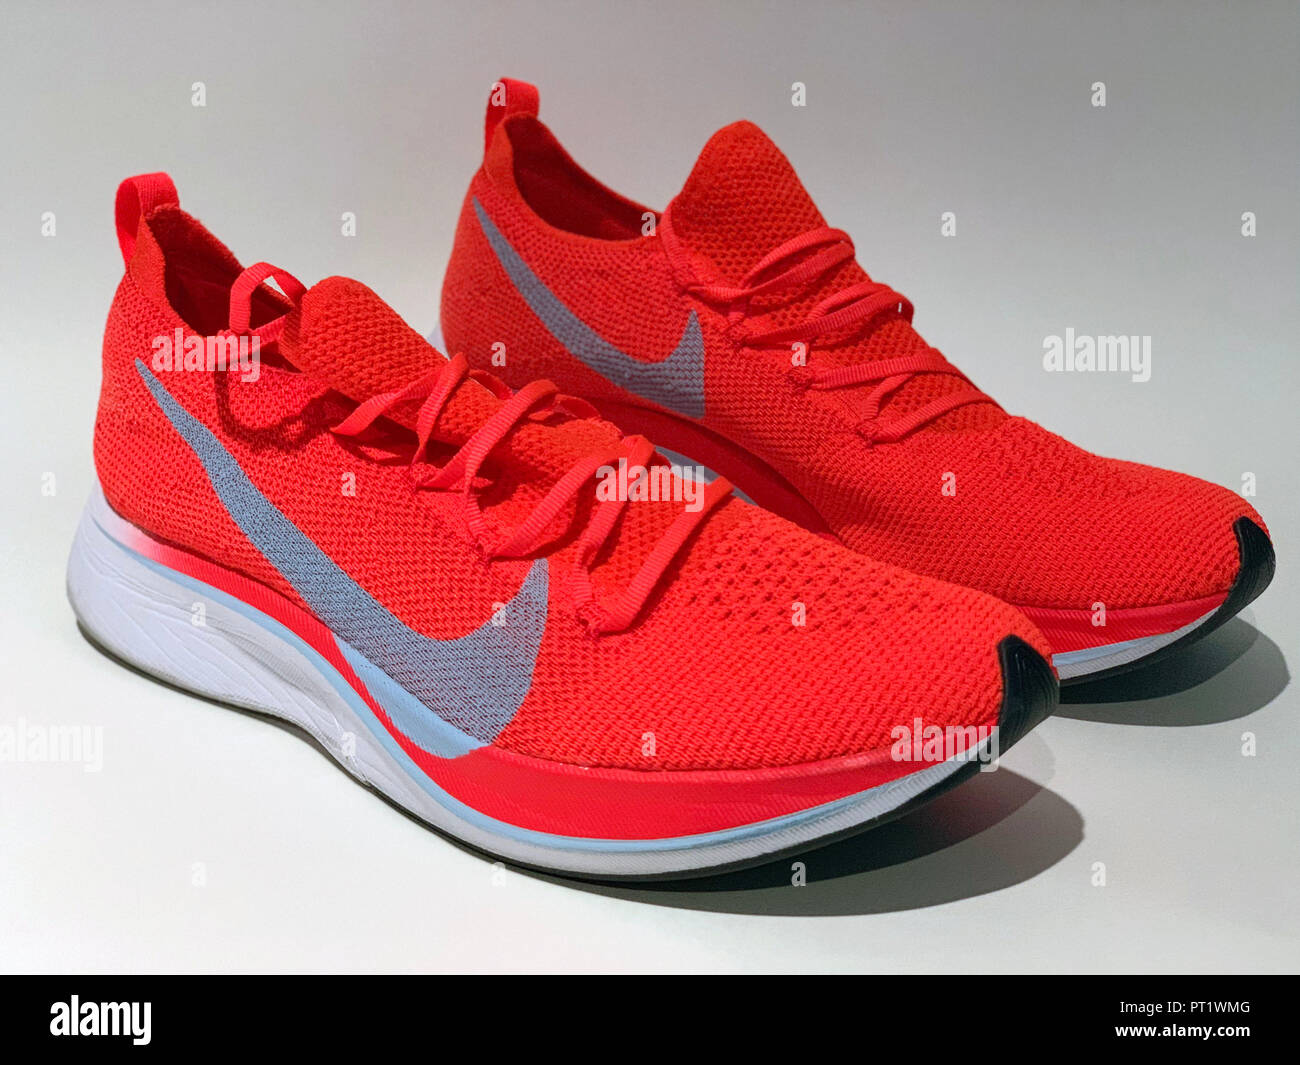 Los Angeles, Estados Unidos. El 05 Oct, 2018. Vista detallada del 4% VaporFly Nike Running Shoe publicado el jueves, 4 de octubre, 2018. El racing flat dispone de un ultra-ligero,